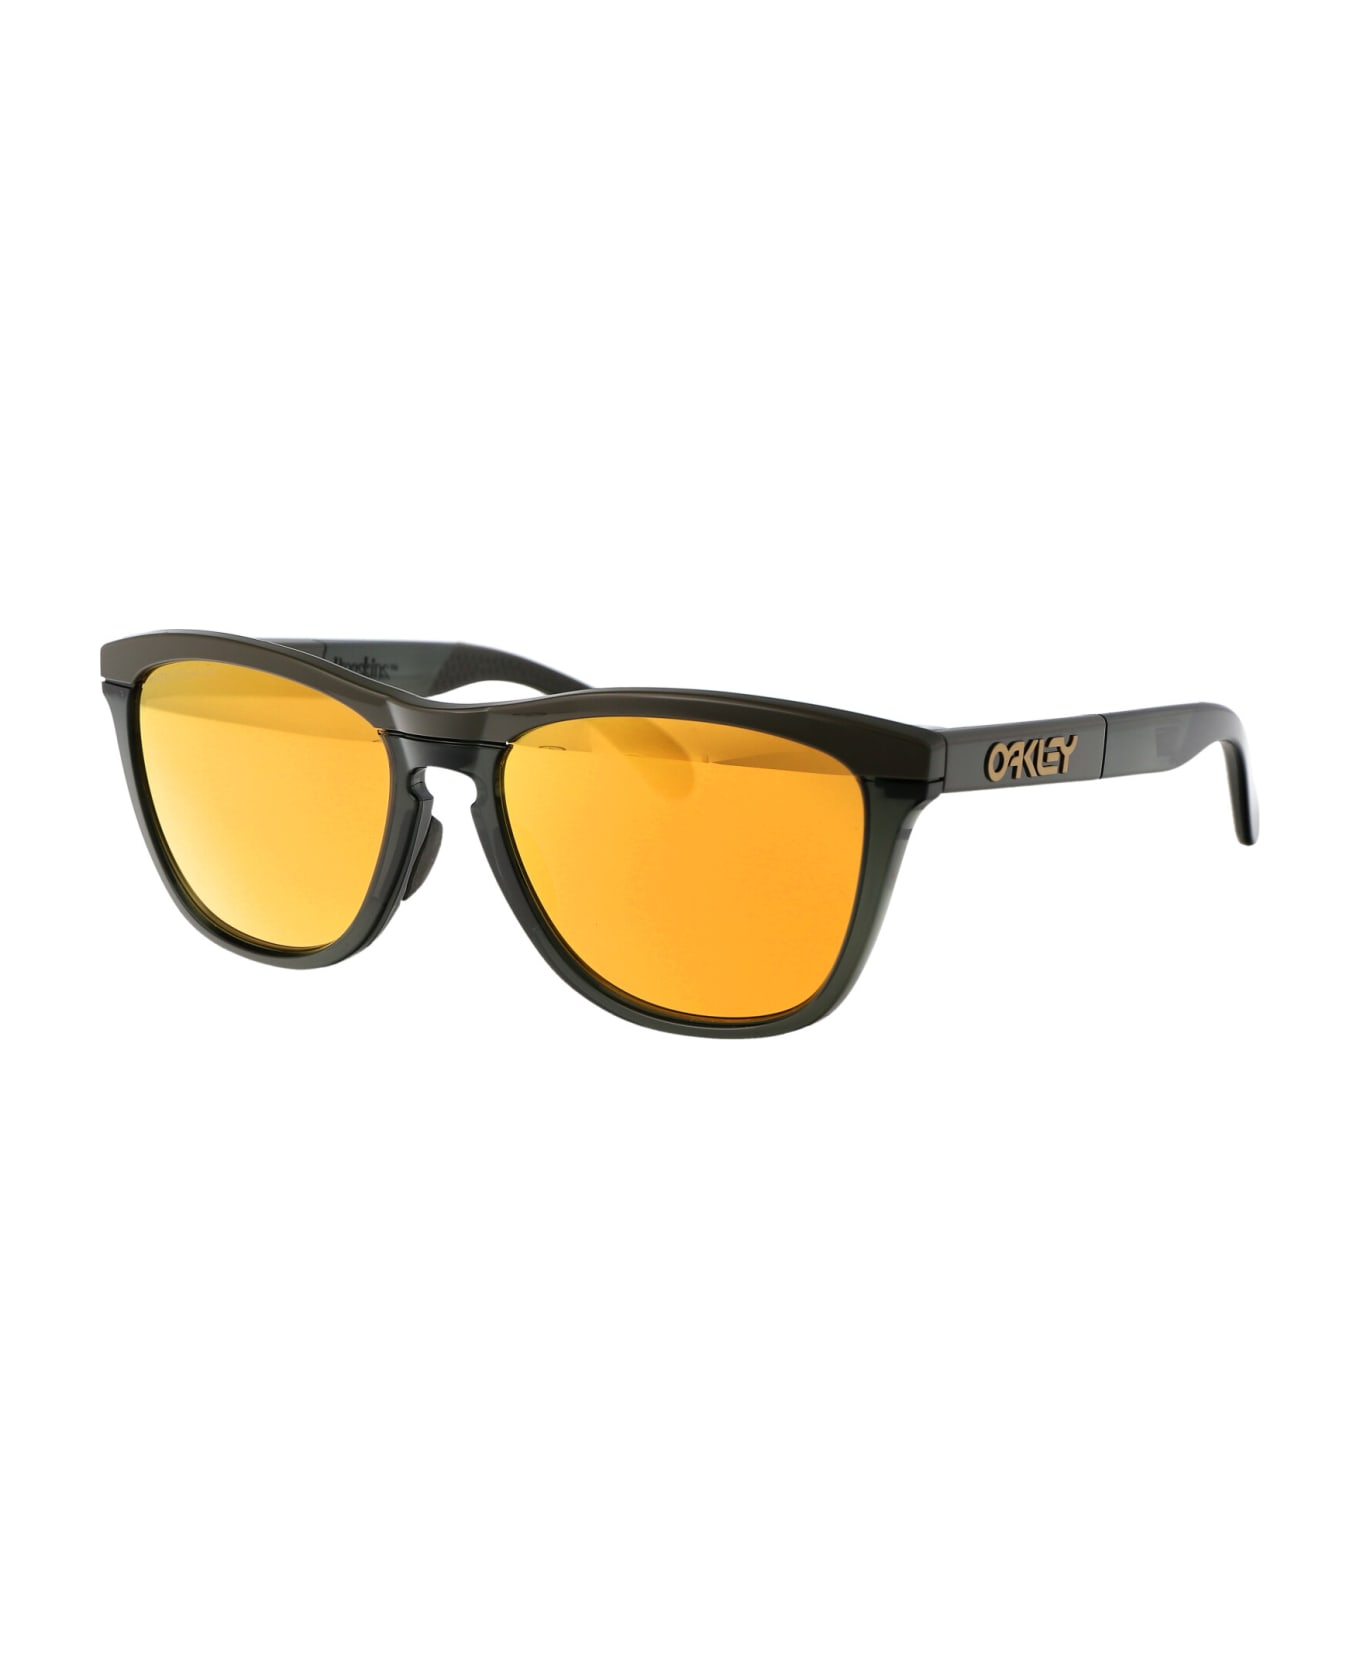 Oakley Frogskins Range Sunglasses - 928408 Dark Brush